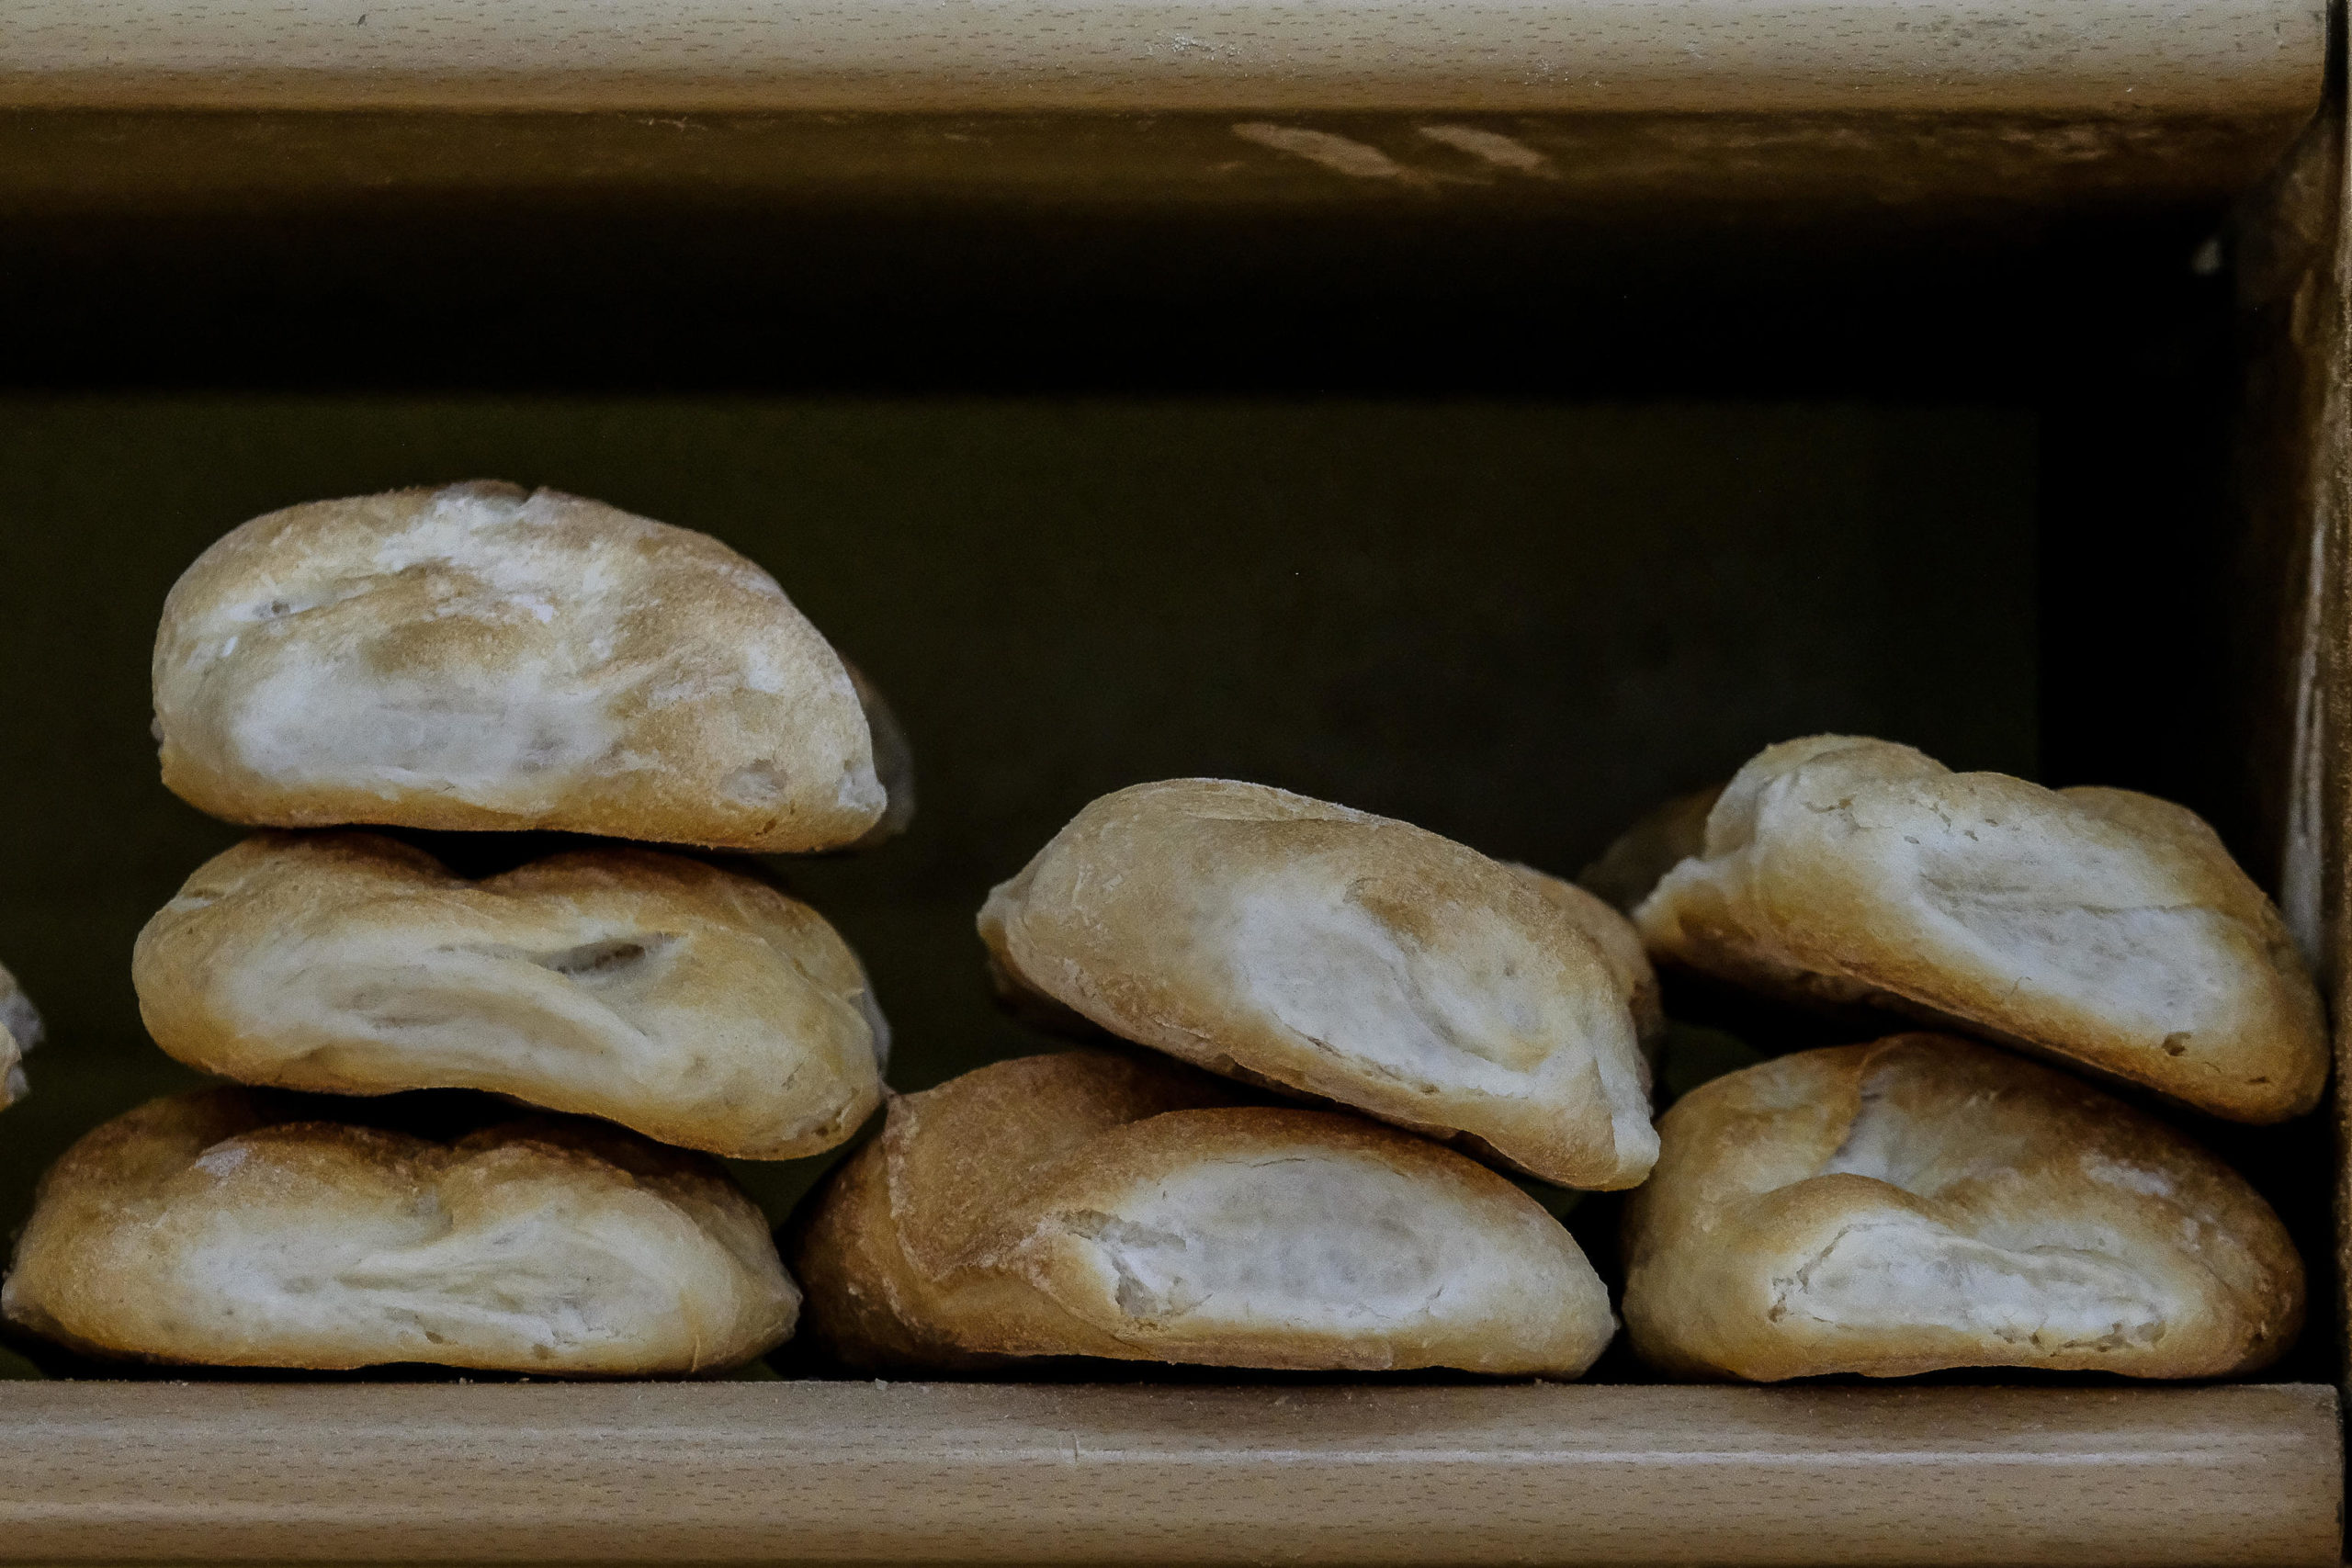 Pane in vendita in un negozio alimentari di Roma, 9 marzo 2022.
ANSA/ALESSANDRO DI MEO